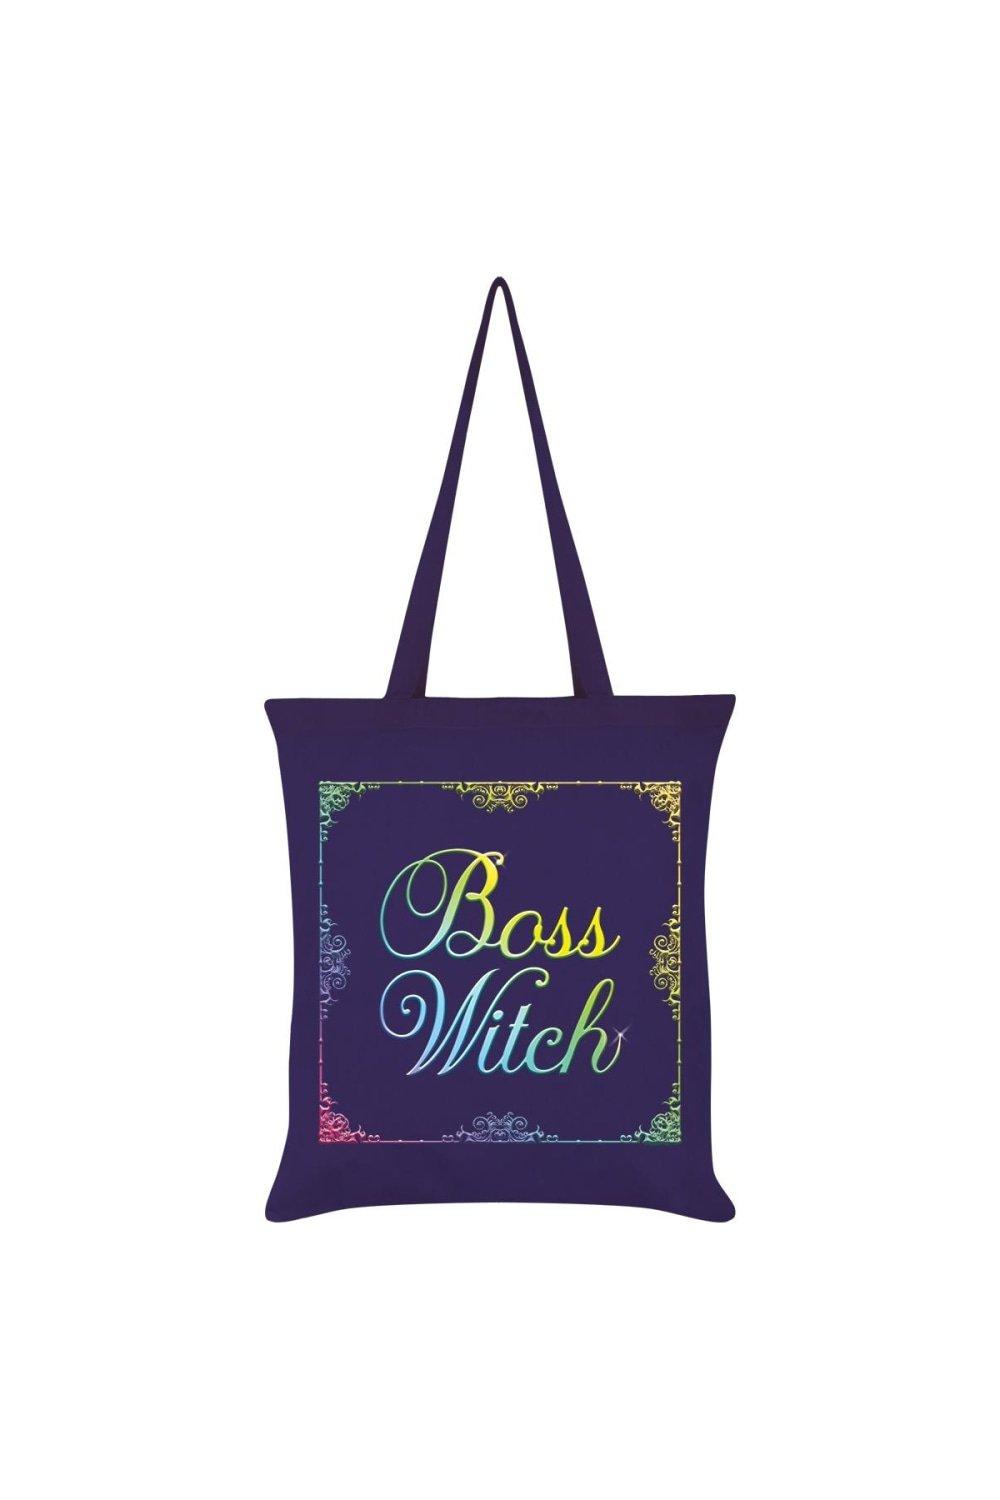 цена Большая сумка Boss Witch Grindstore, фиолетовый